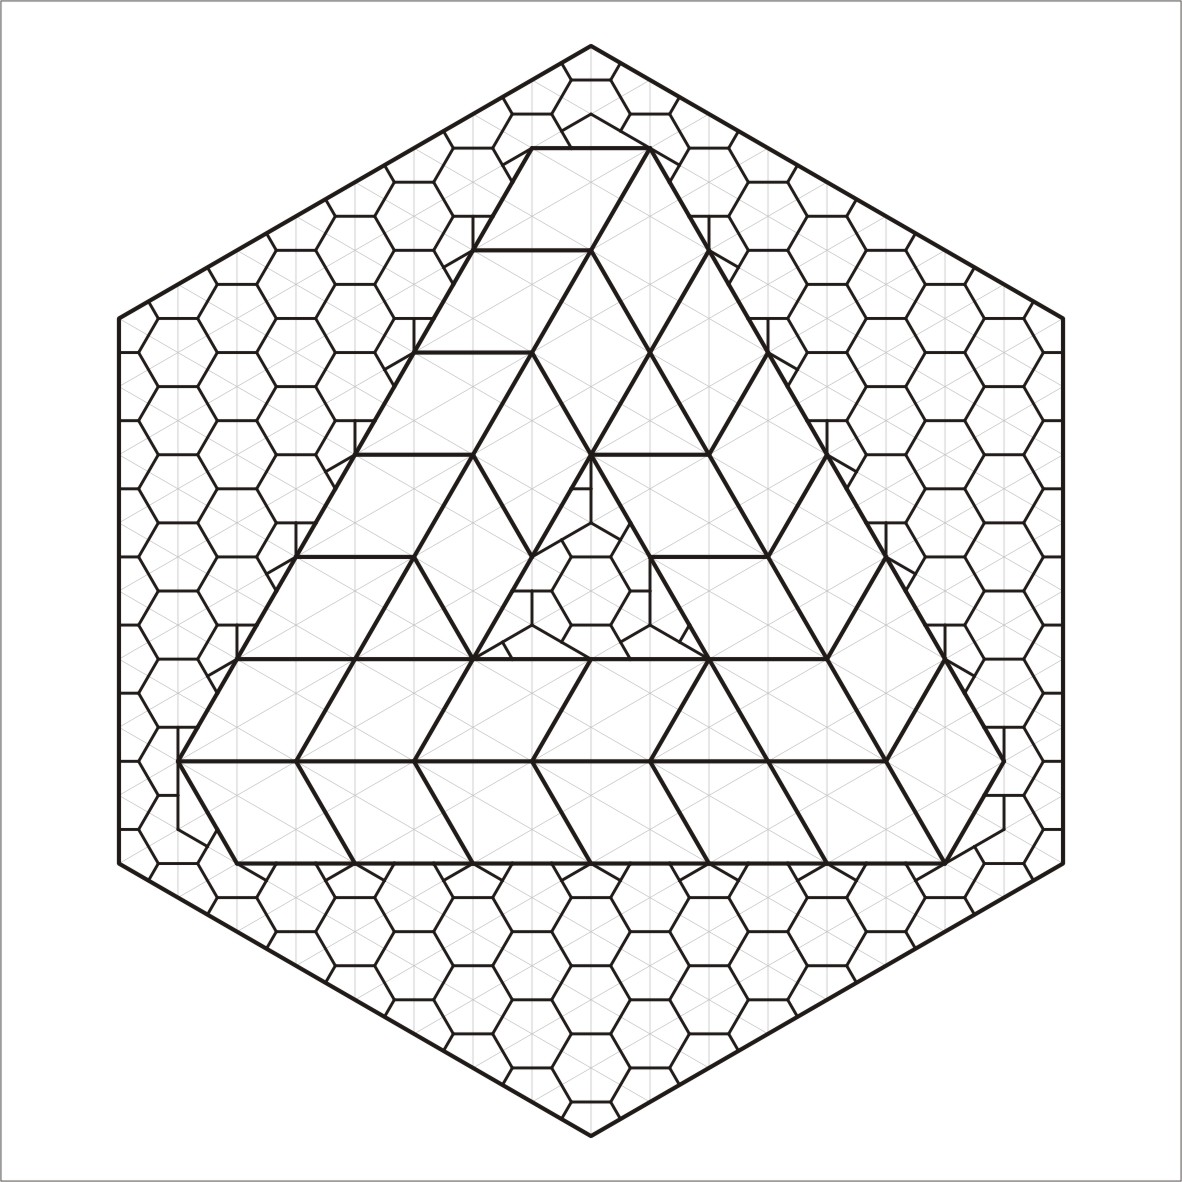 Penrose Triangle #2